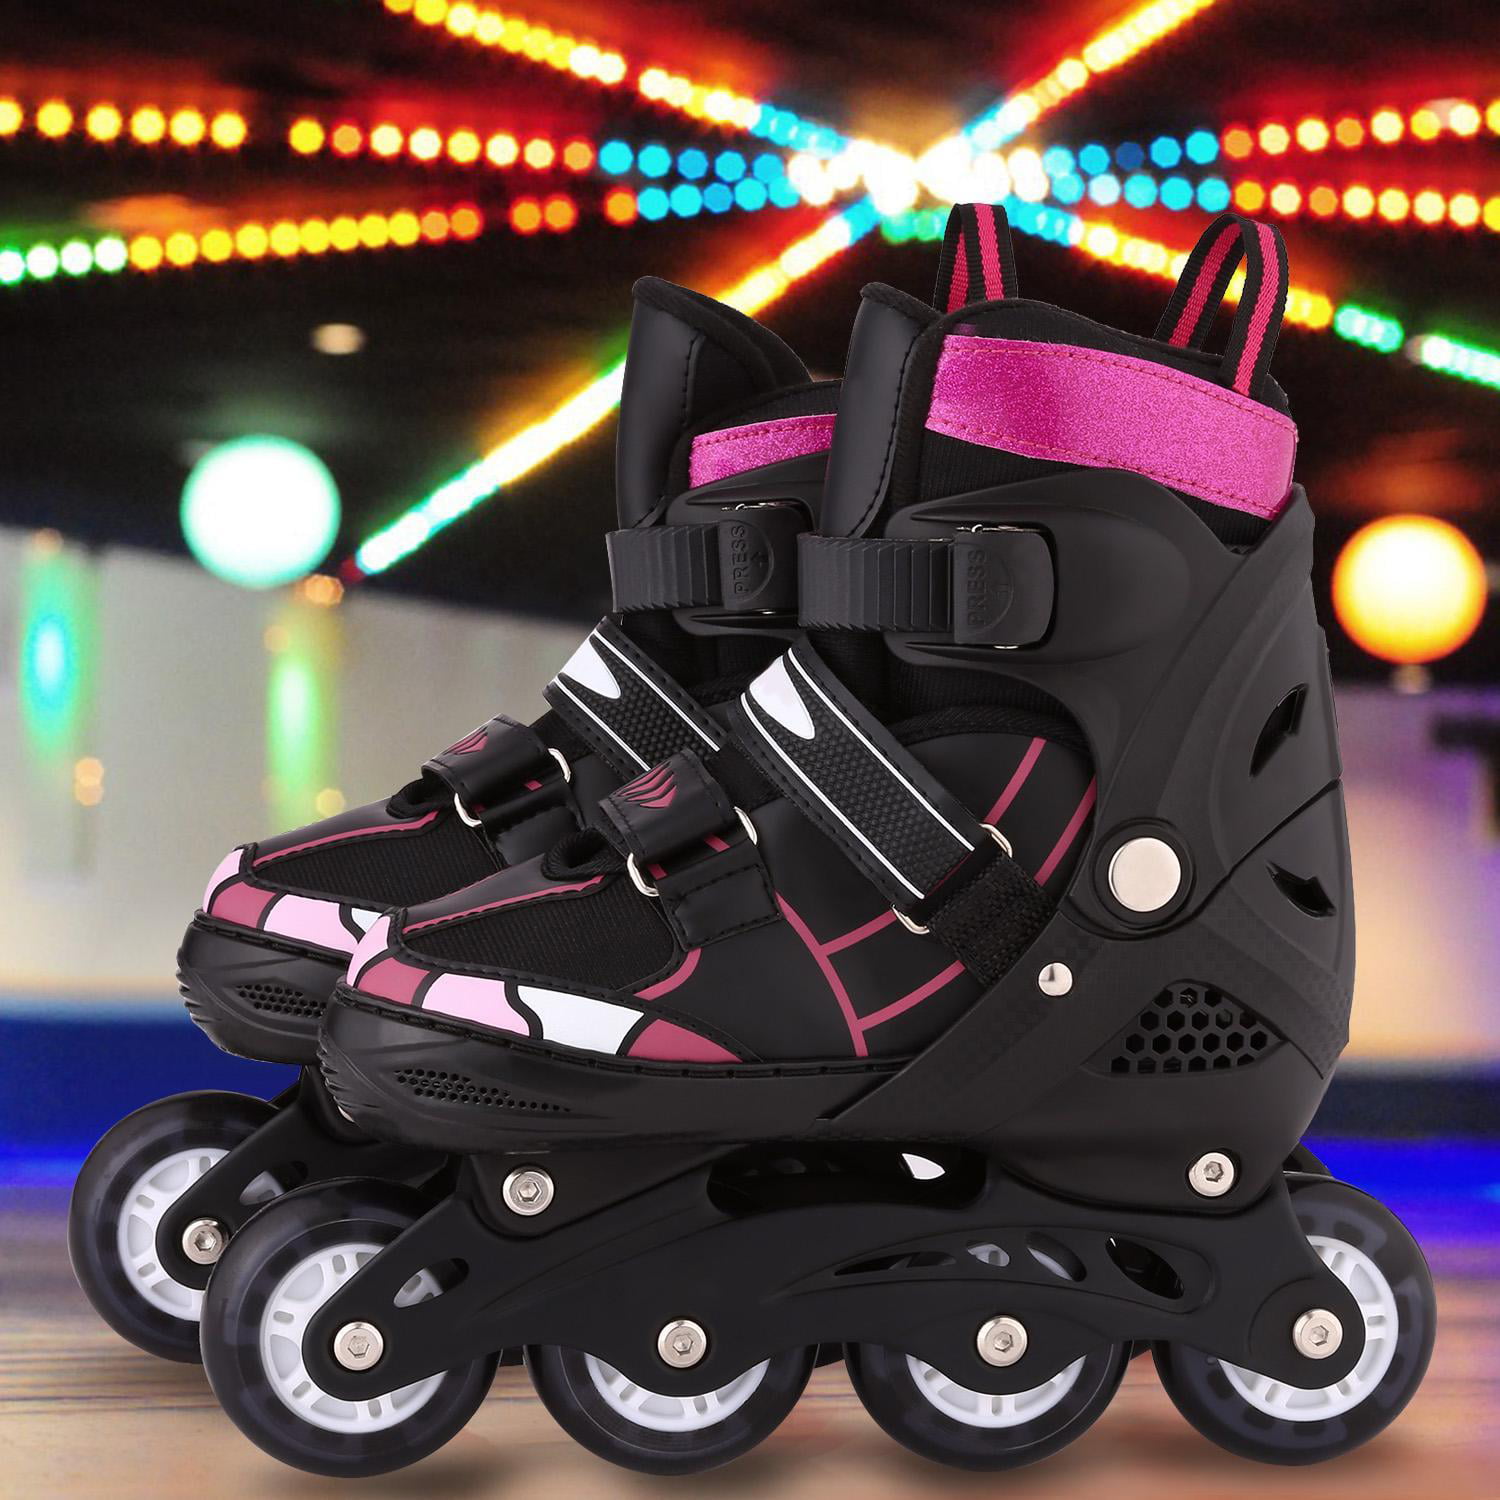 Sumeber Adjustable Roller Skates for Kids Girls Boys Flashing Wheels Skates Shoes Light up Xmas Birthday Gift Strong Safer Kit